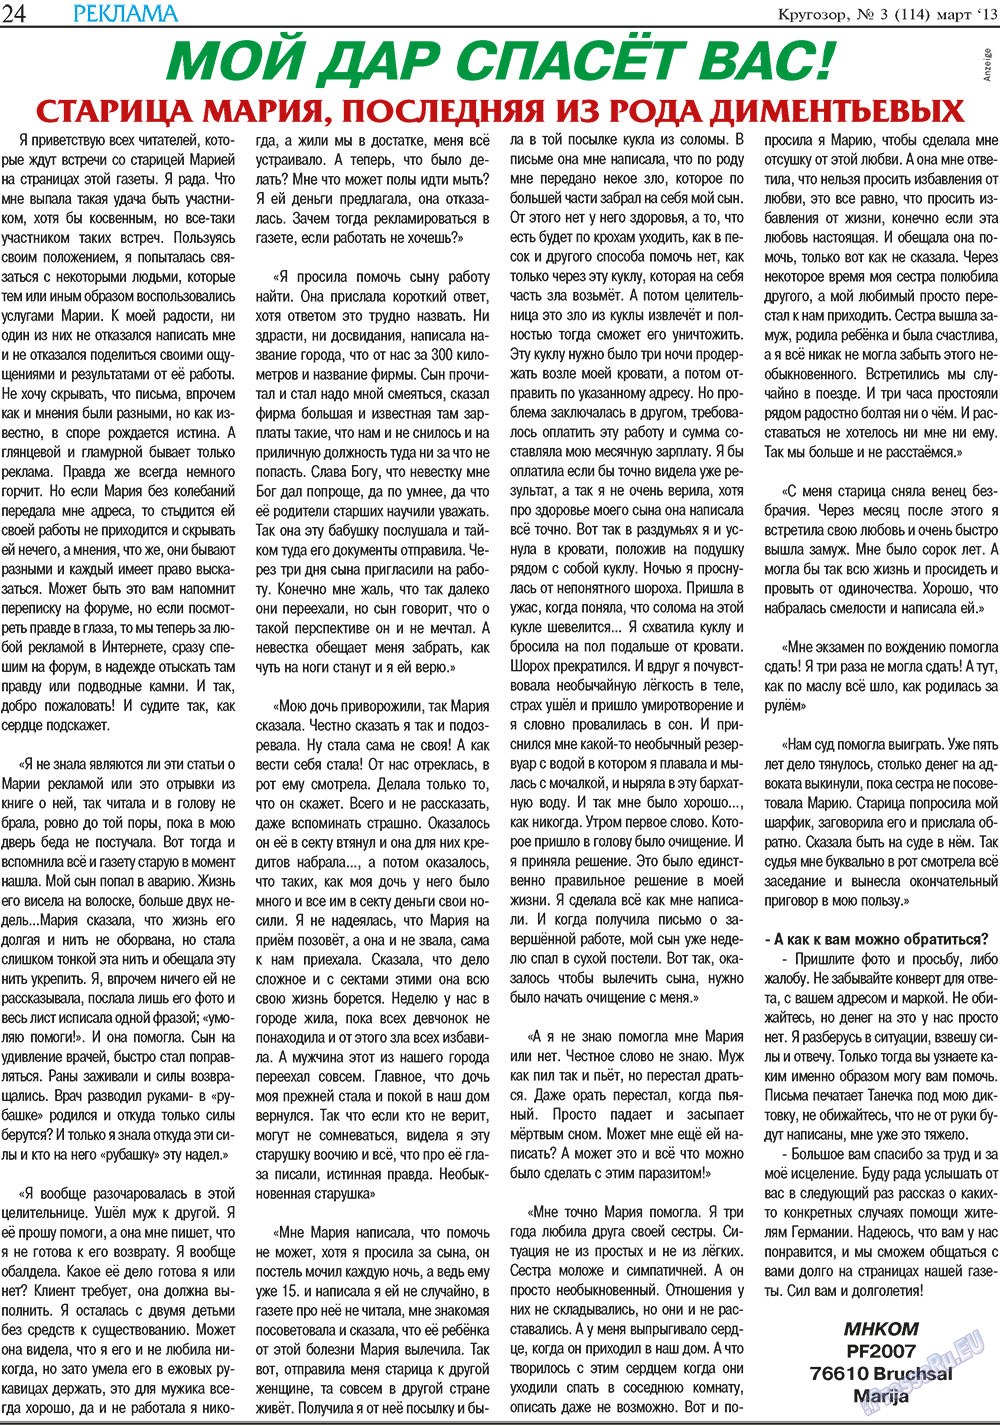 Кругозор (газета). 2013 год, номер 3, стр. 24